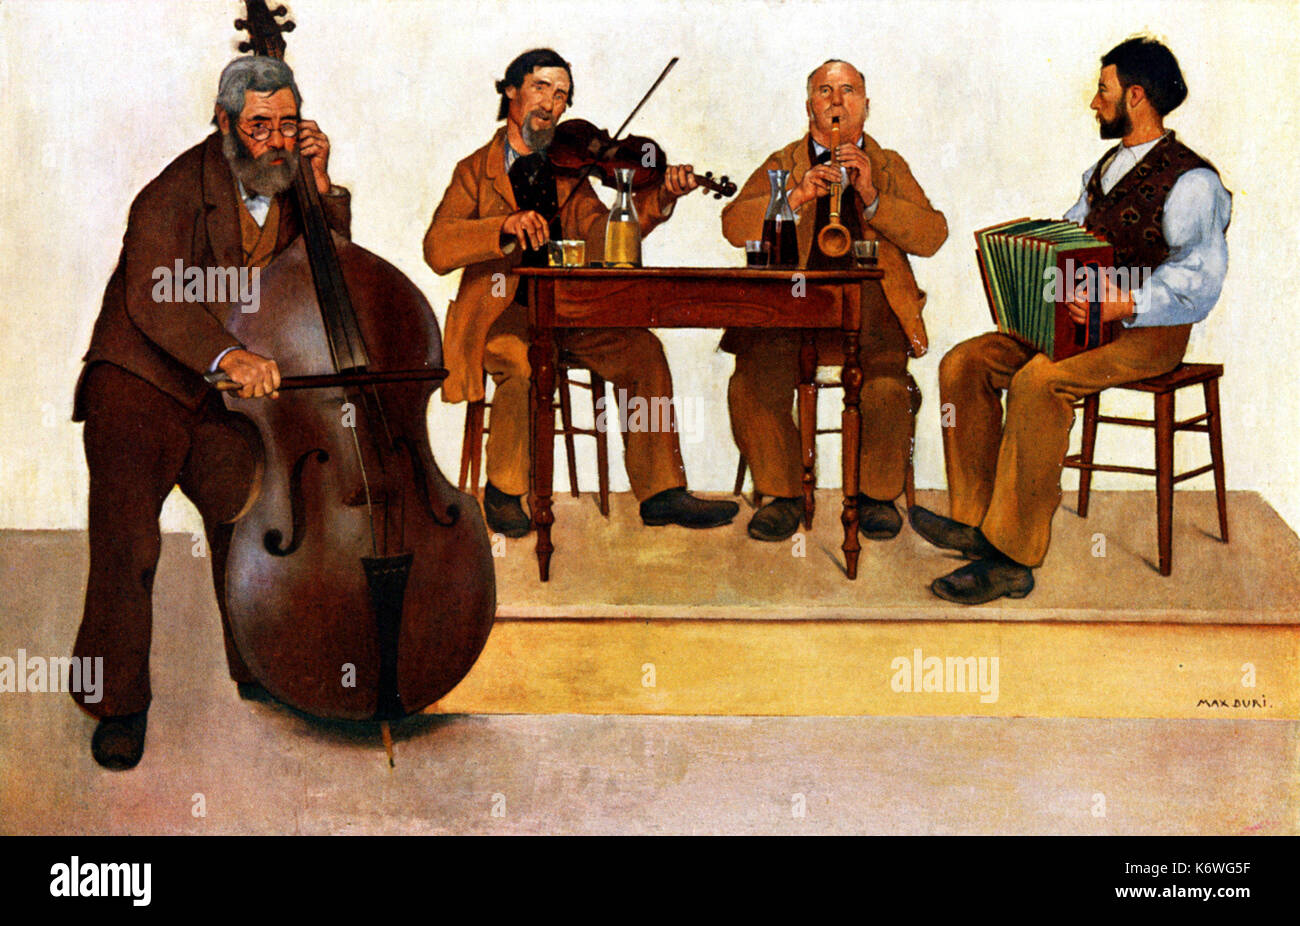 Contrabajista en Swiss Village band, con el violinista, clarinetista y acordeón. Por Max Buri. 1868 - 1915 . Cuarteto. Foto de stock